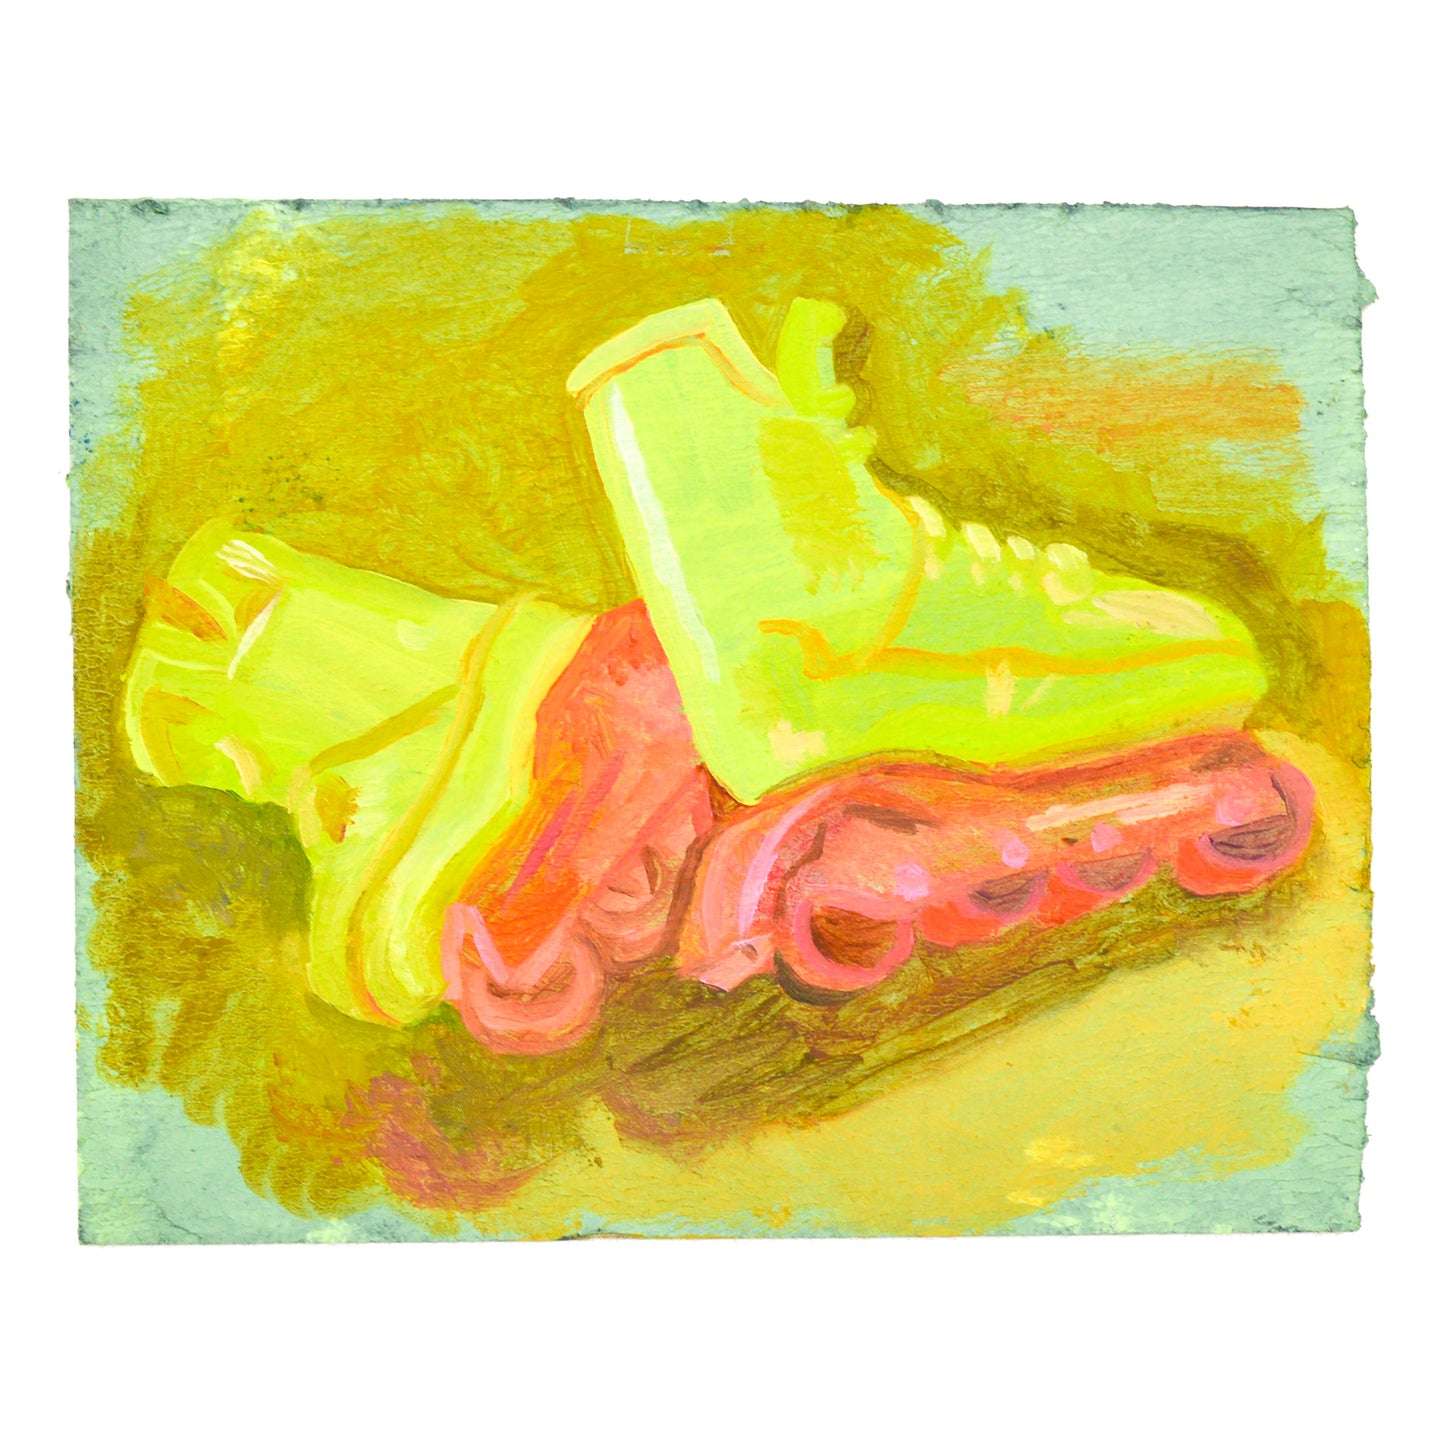 Retro Yellow Skates